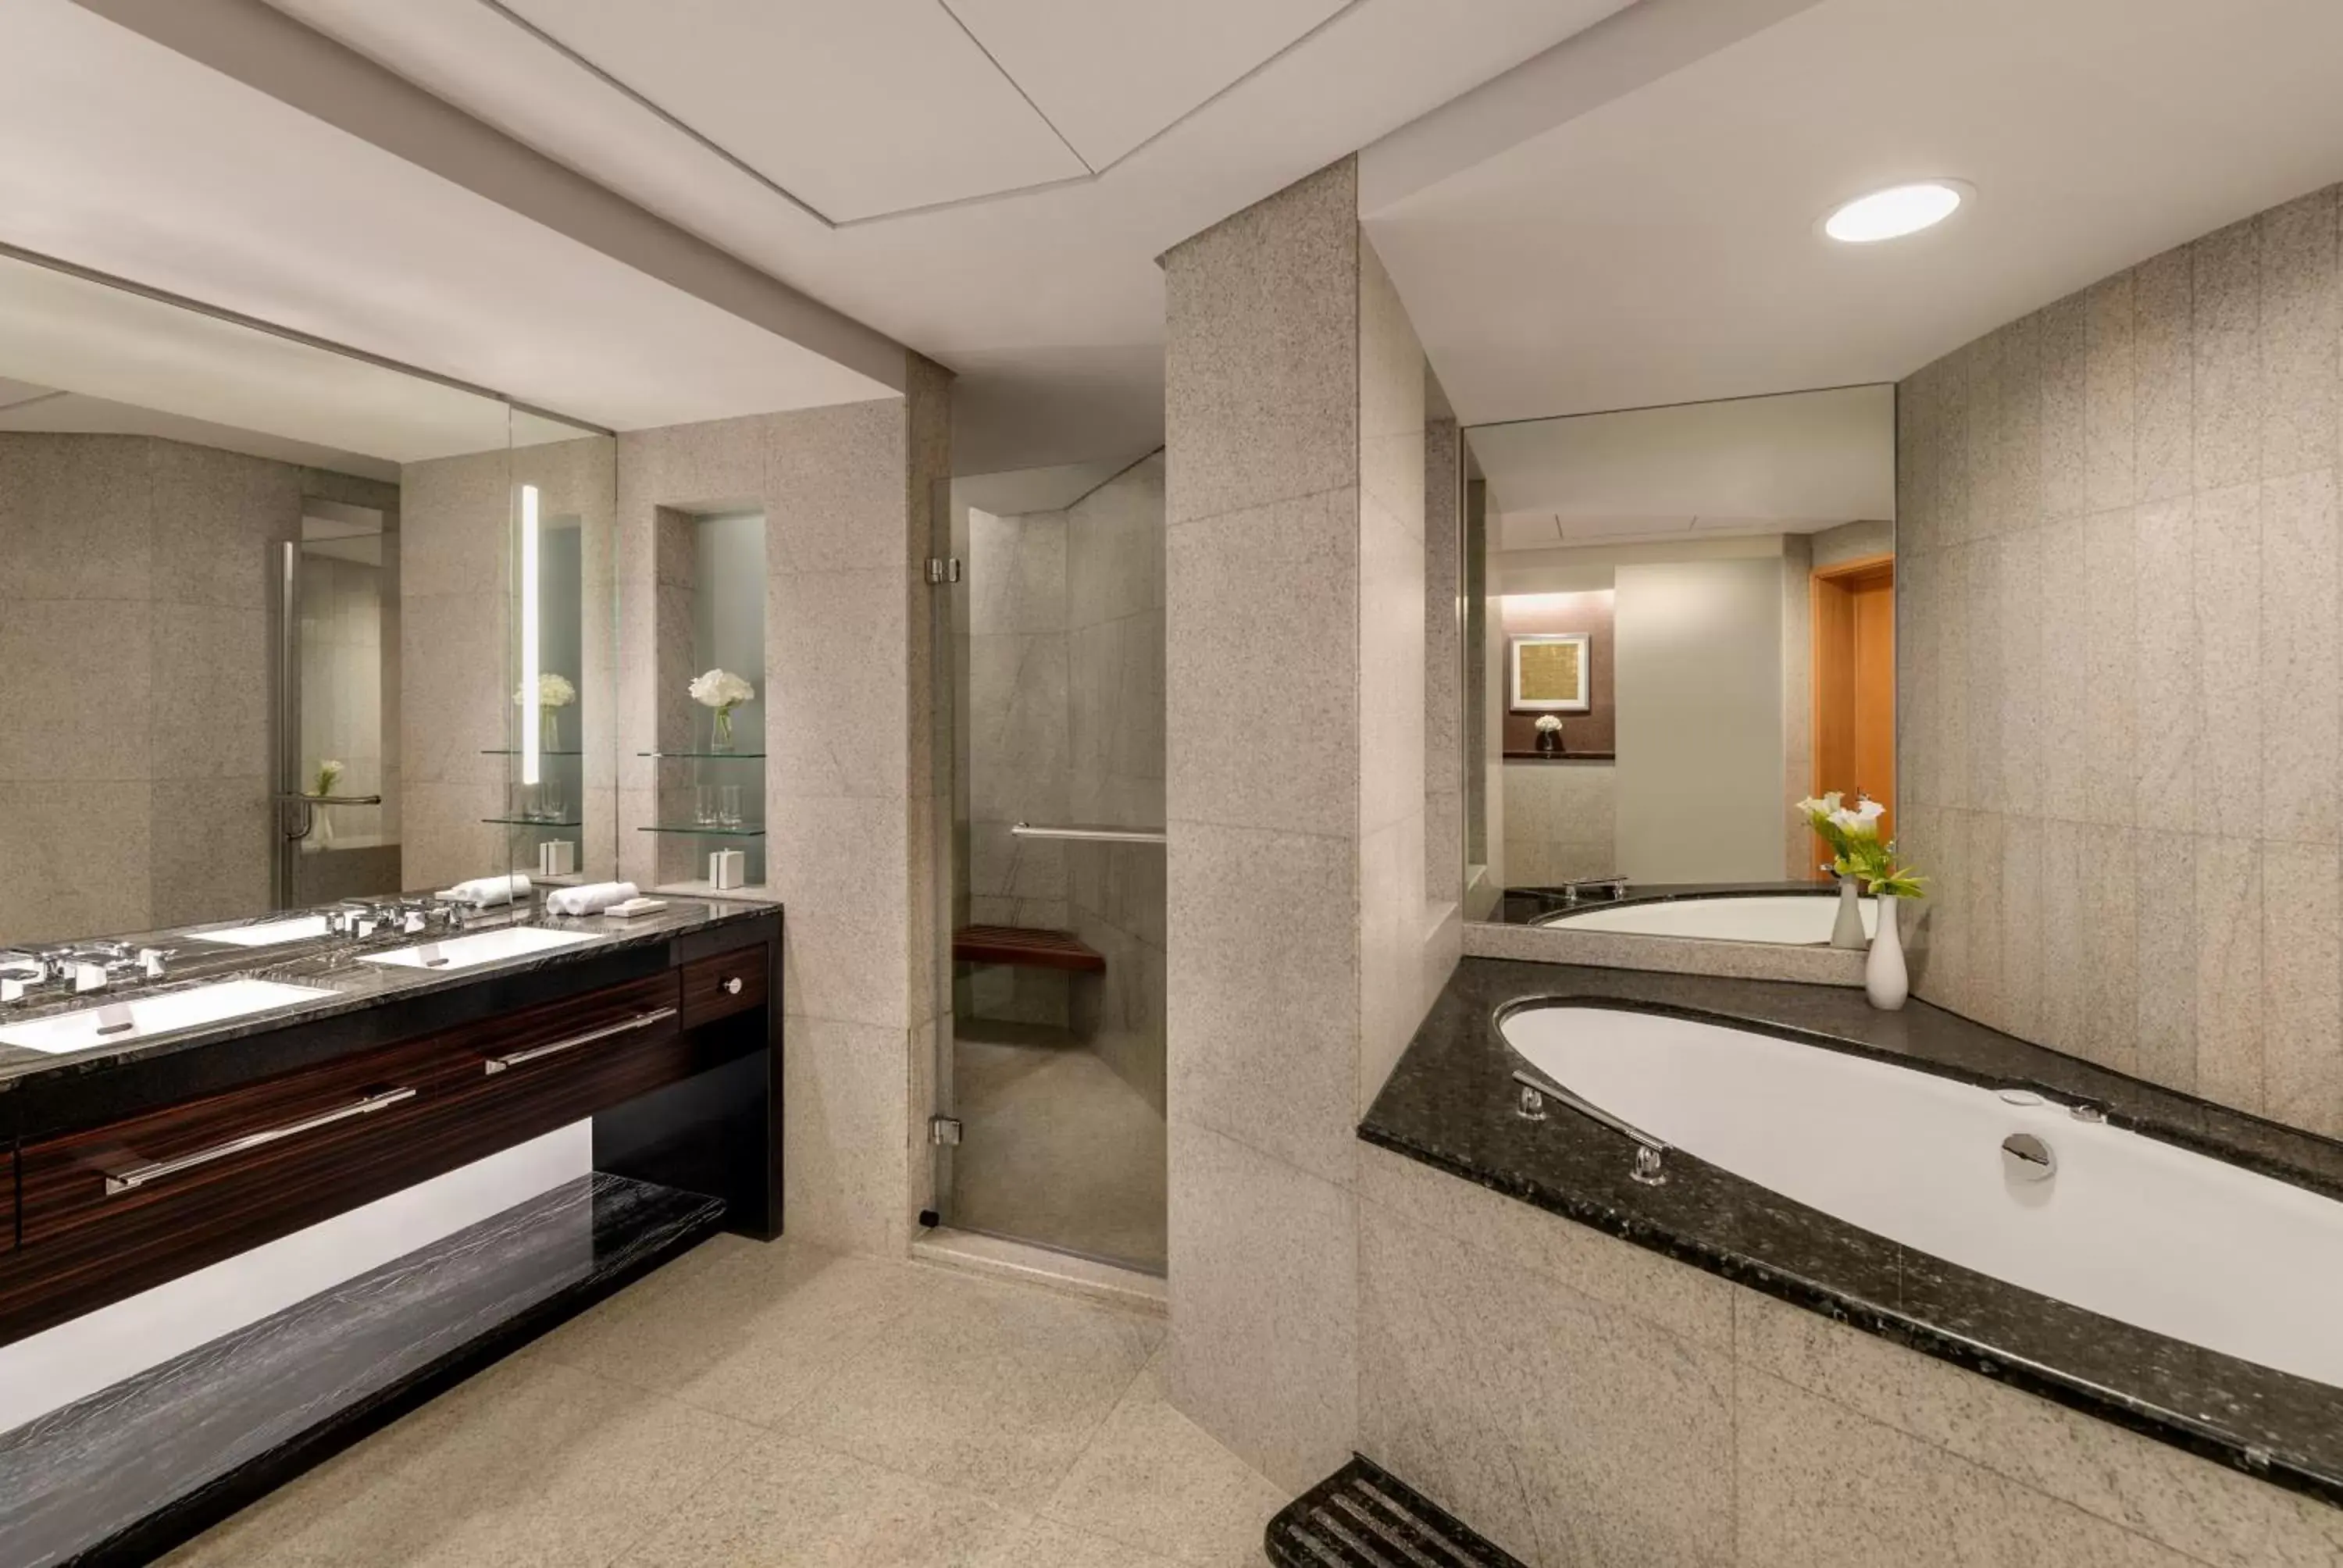 Toilet, Bathroom in Shangri-La Dubai